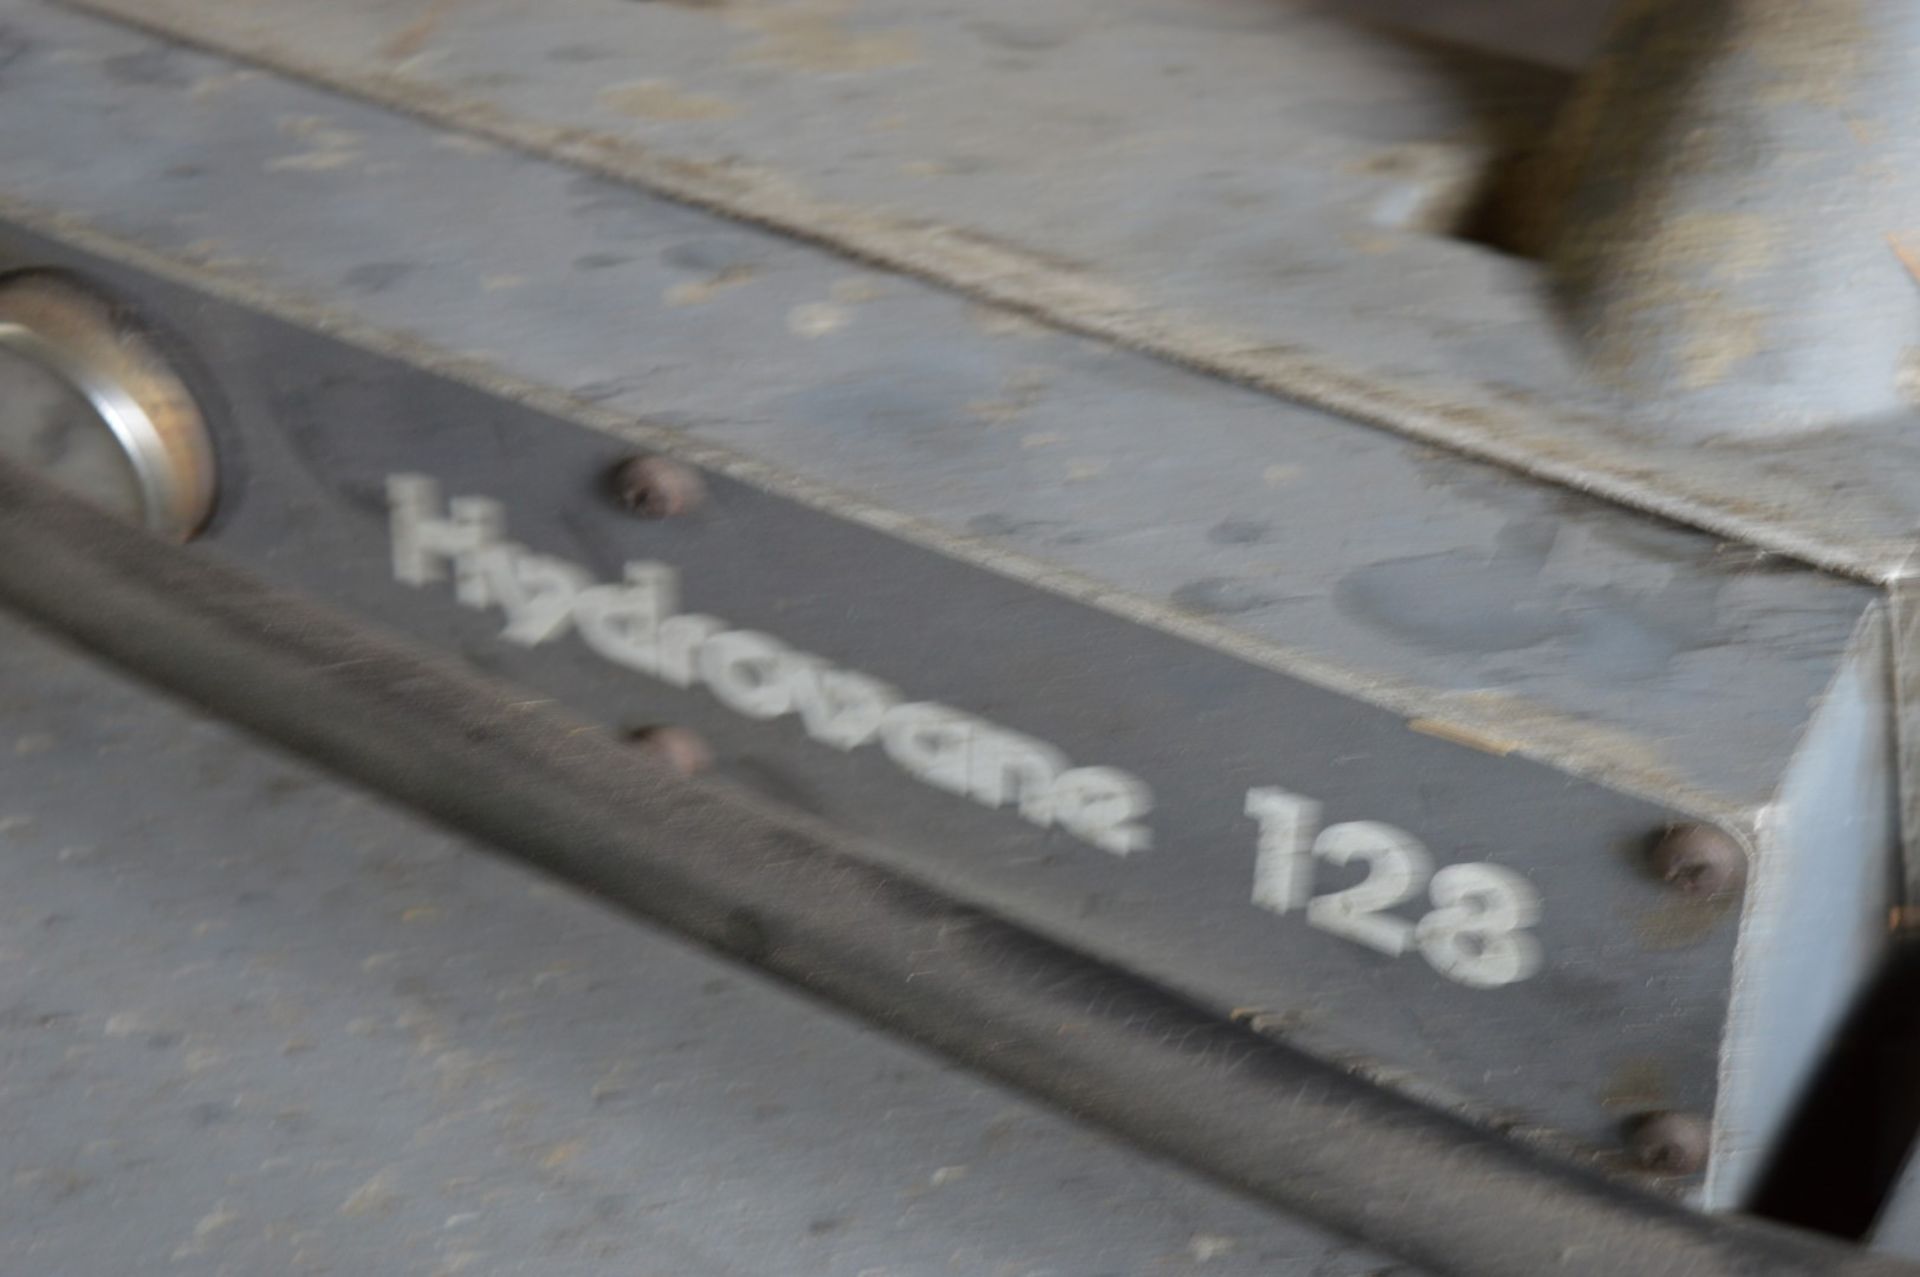 1 x Hydrovane 128 Compressor - CL202 - Location: Altrincham WA14 - Image 2 of 6